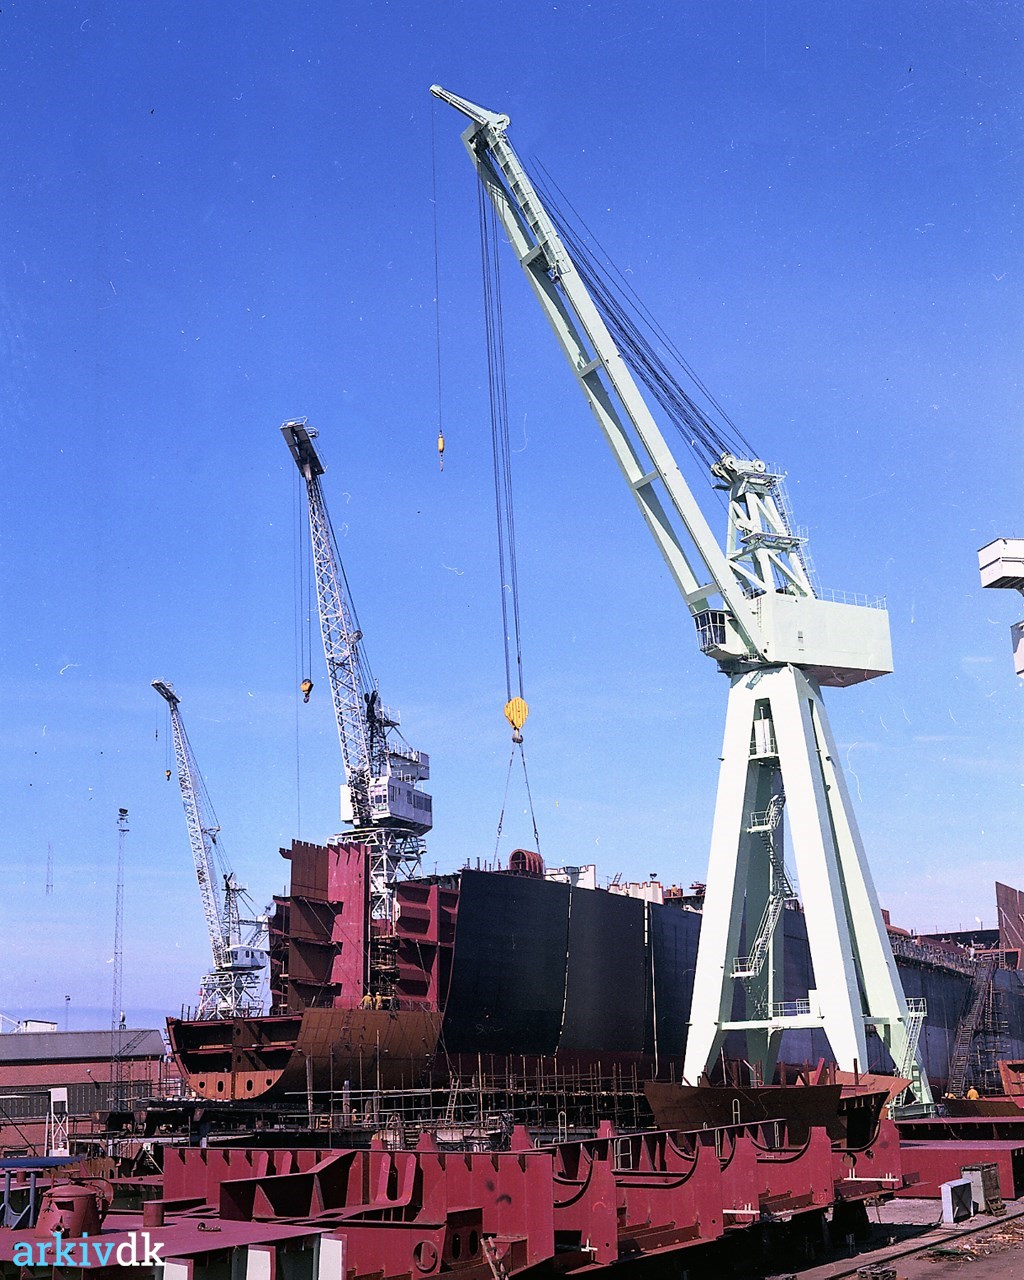 arkiv.dk | 100 tons kran på Nakskov Skibsværft.